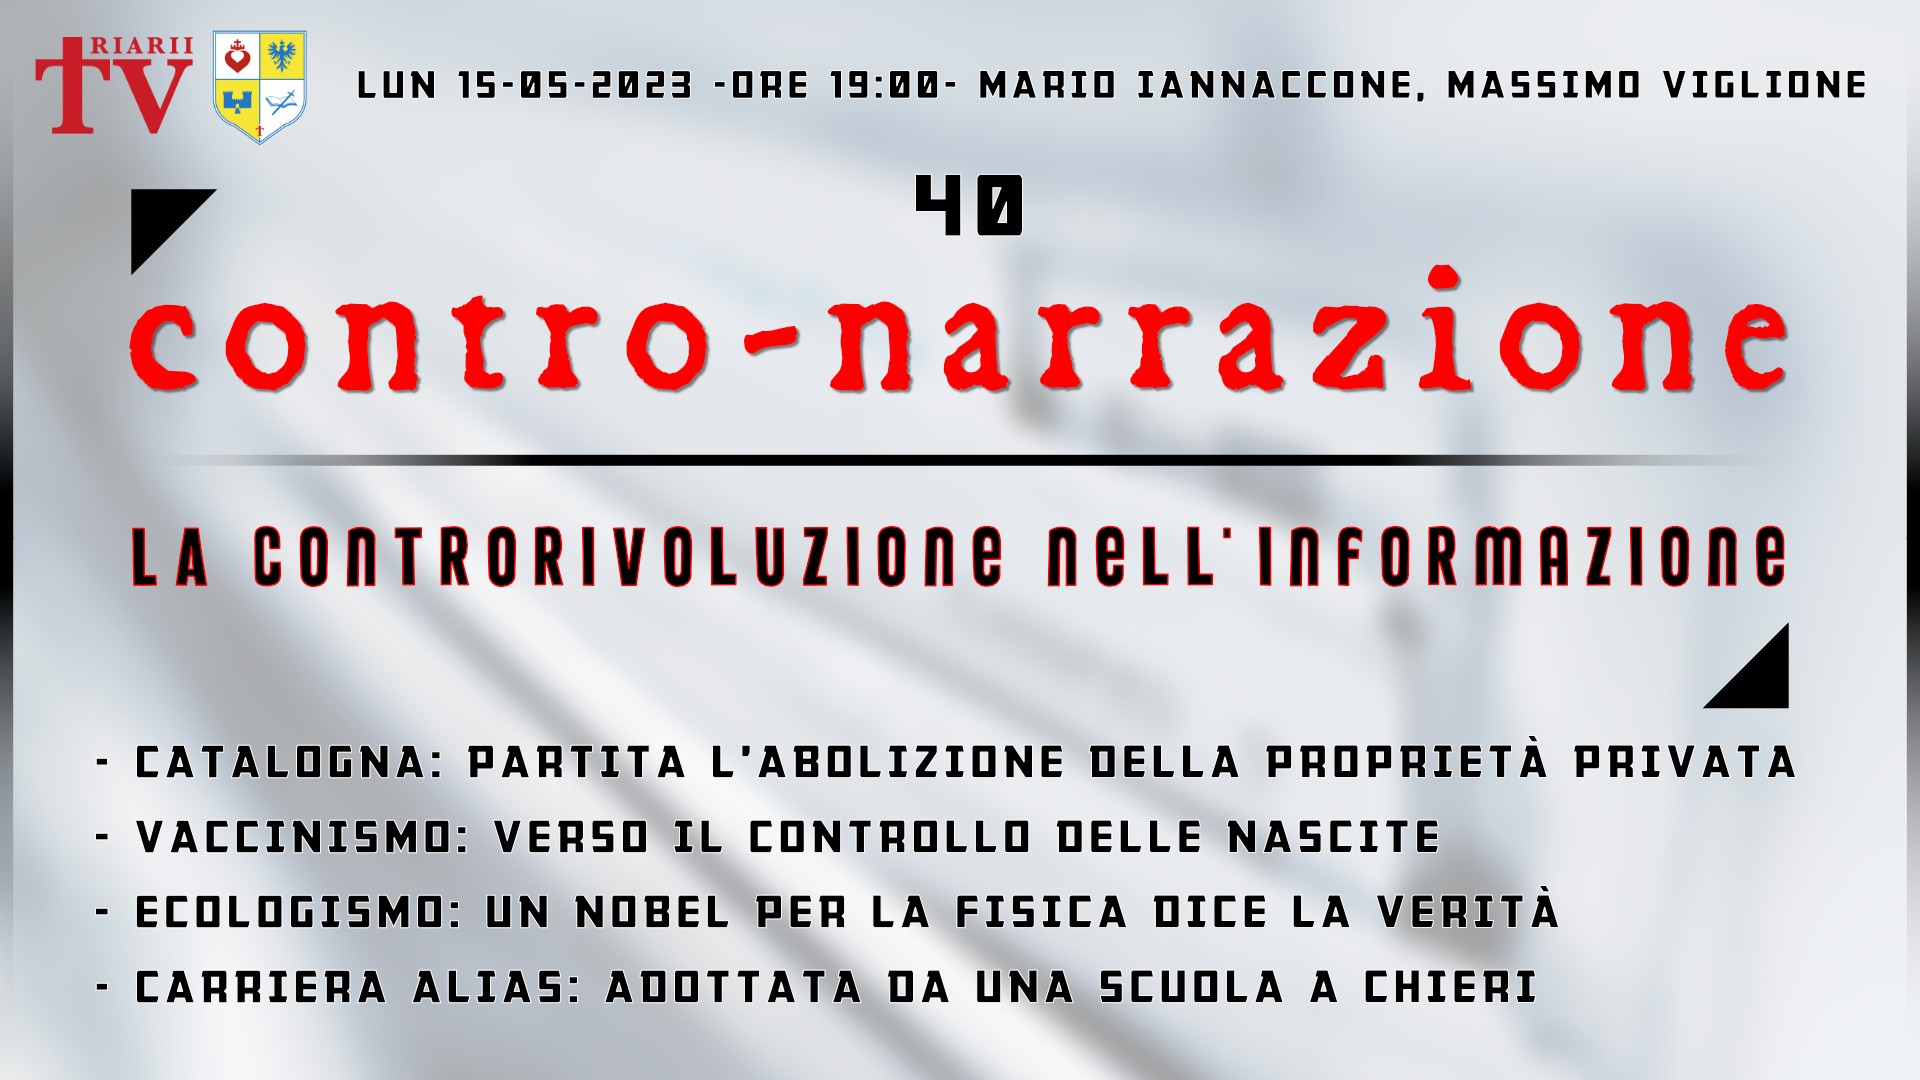 CONTRO-NARRAZIONE NR.40 - LUN 15 MAGGIO 2023 - Mario Iannaccone, Massimo Viglione